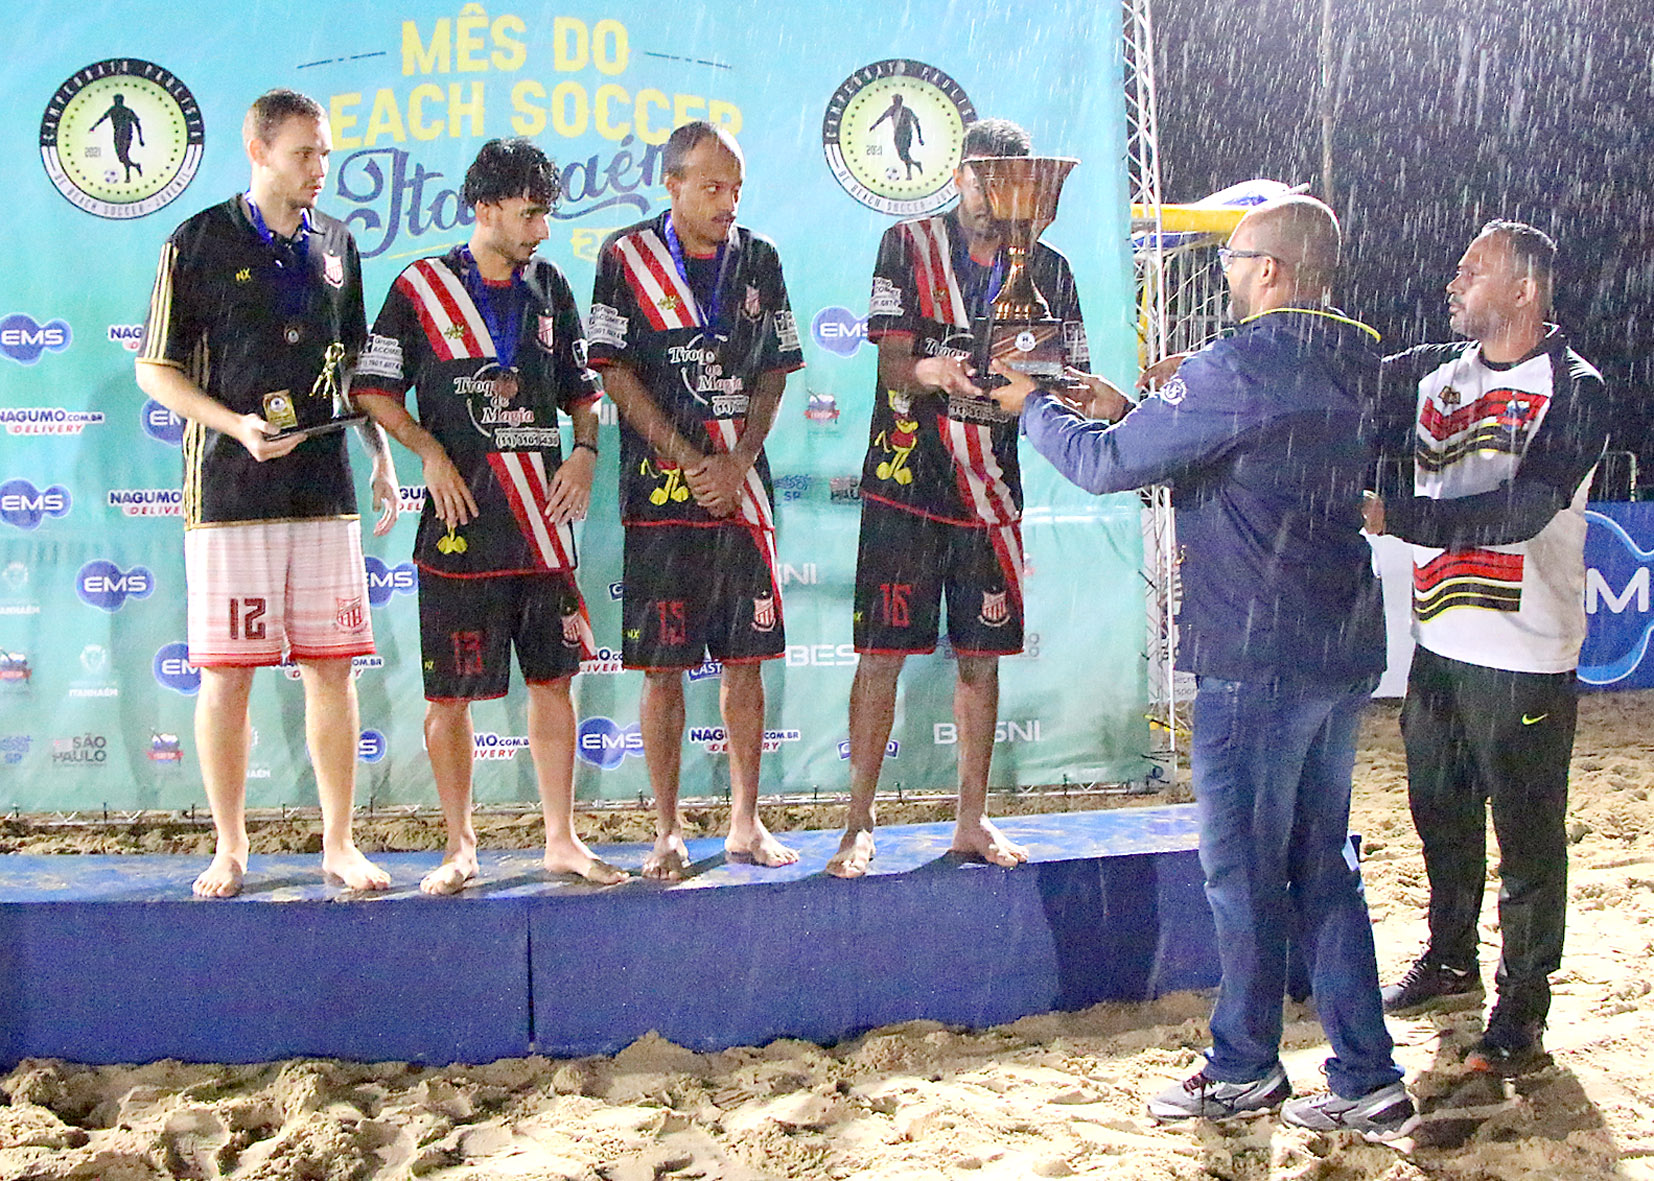 Lapa Beach Soccer terminou o campeonato em terceiro lugar